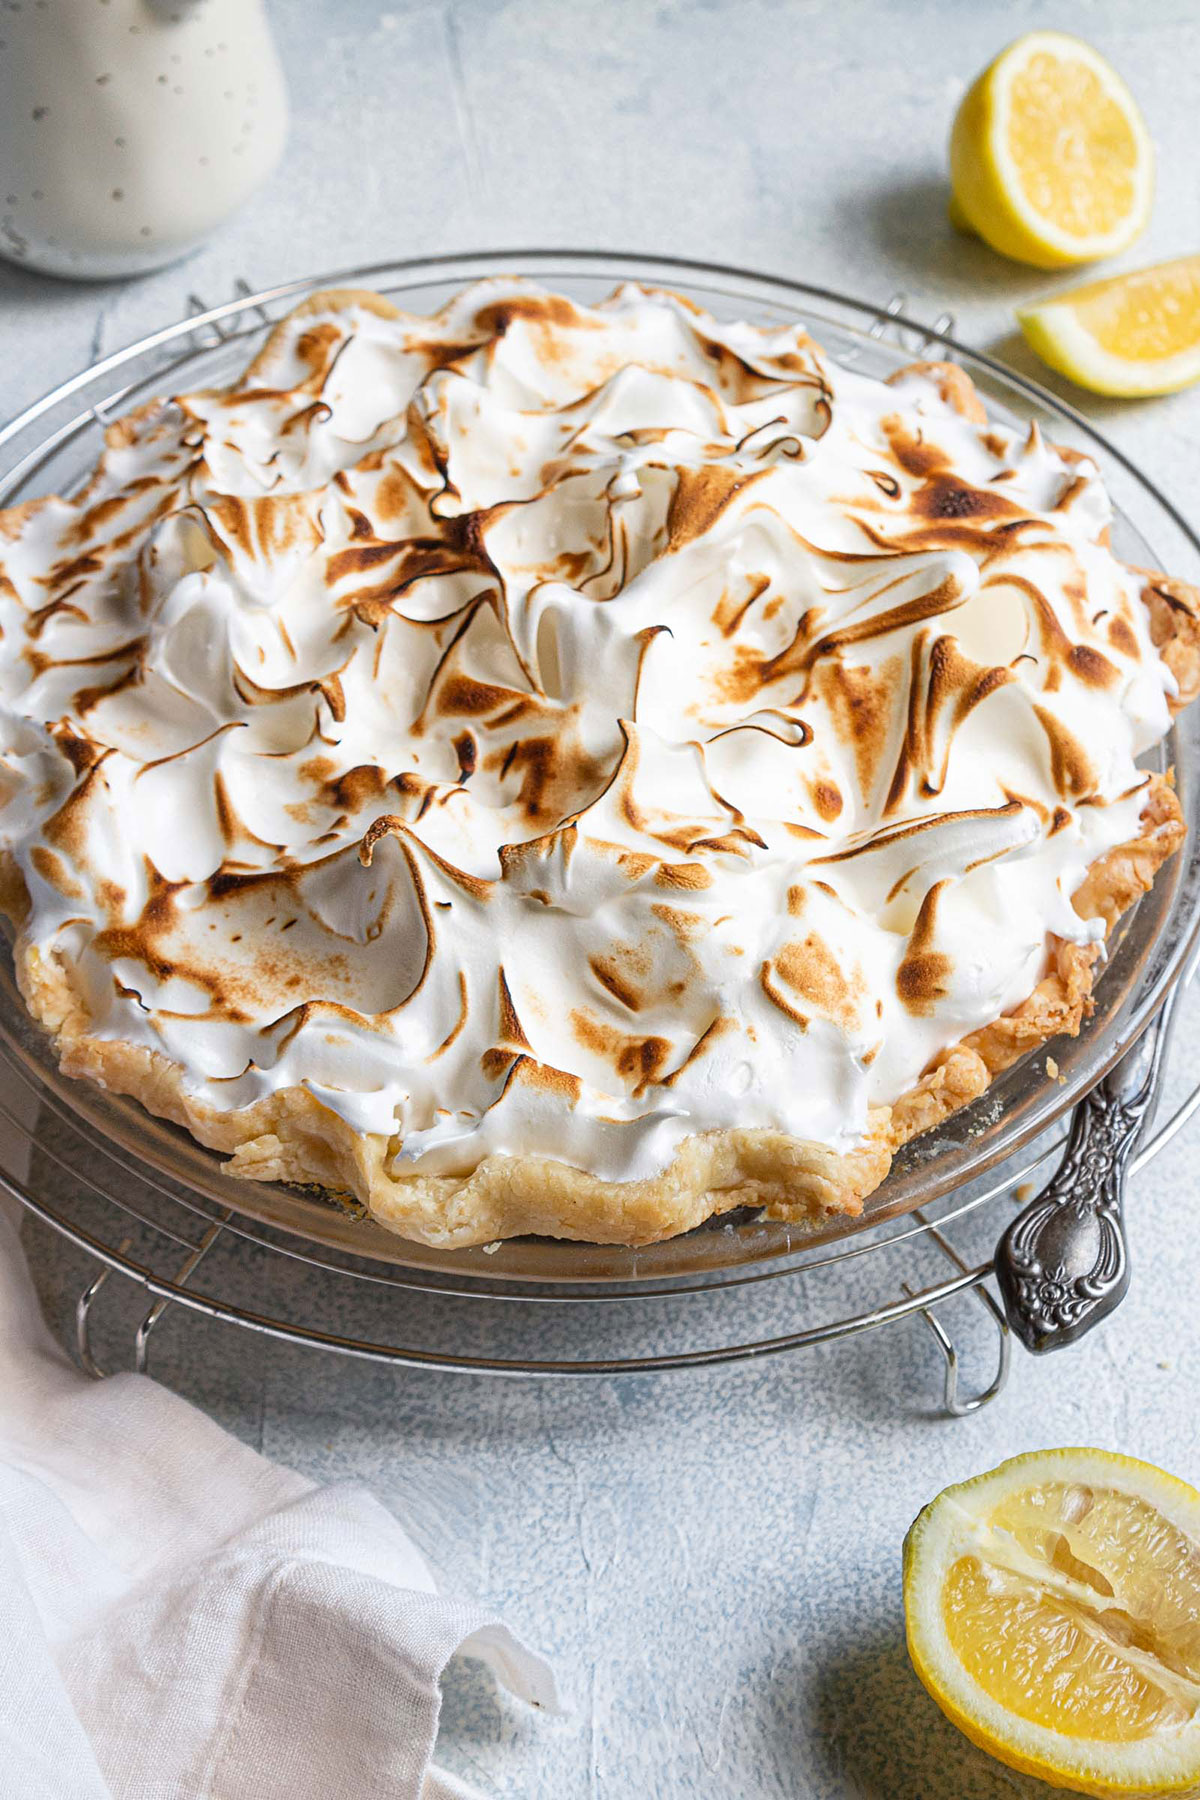 Lemon Meringue Pie with browned meringue on top.